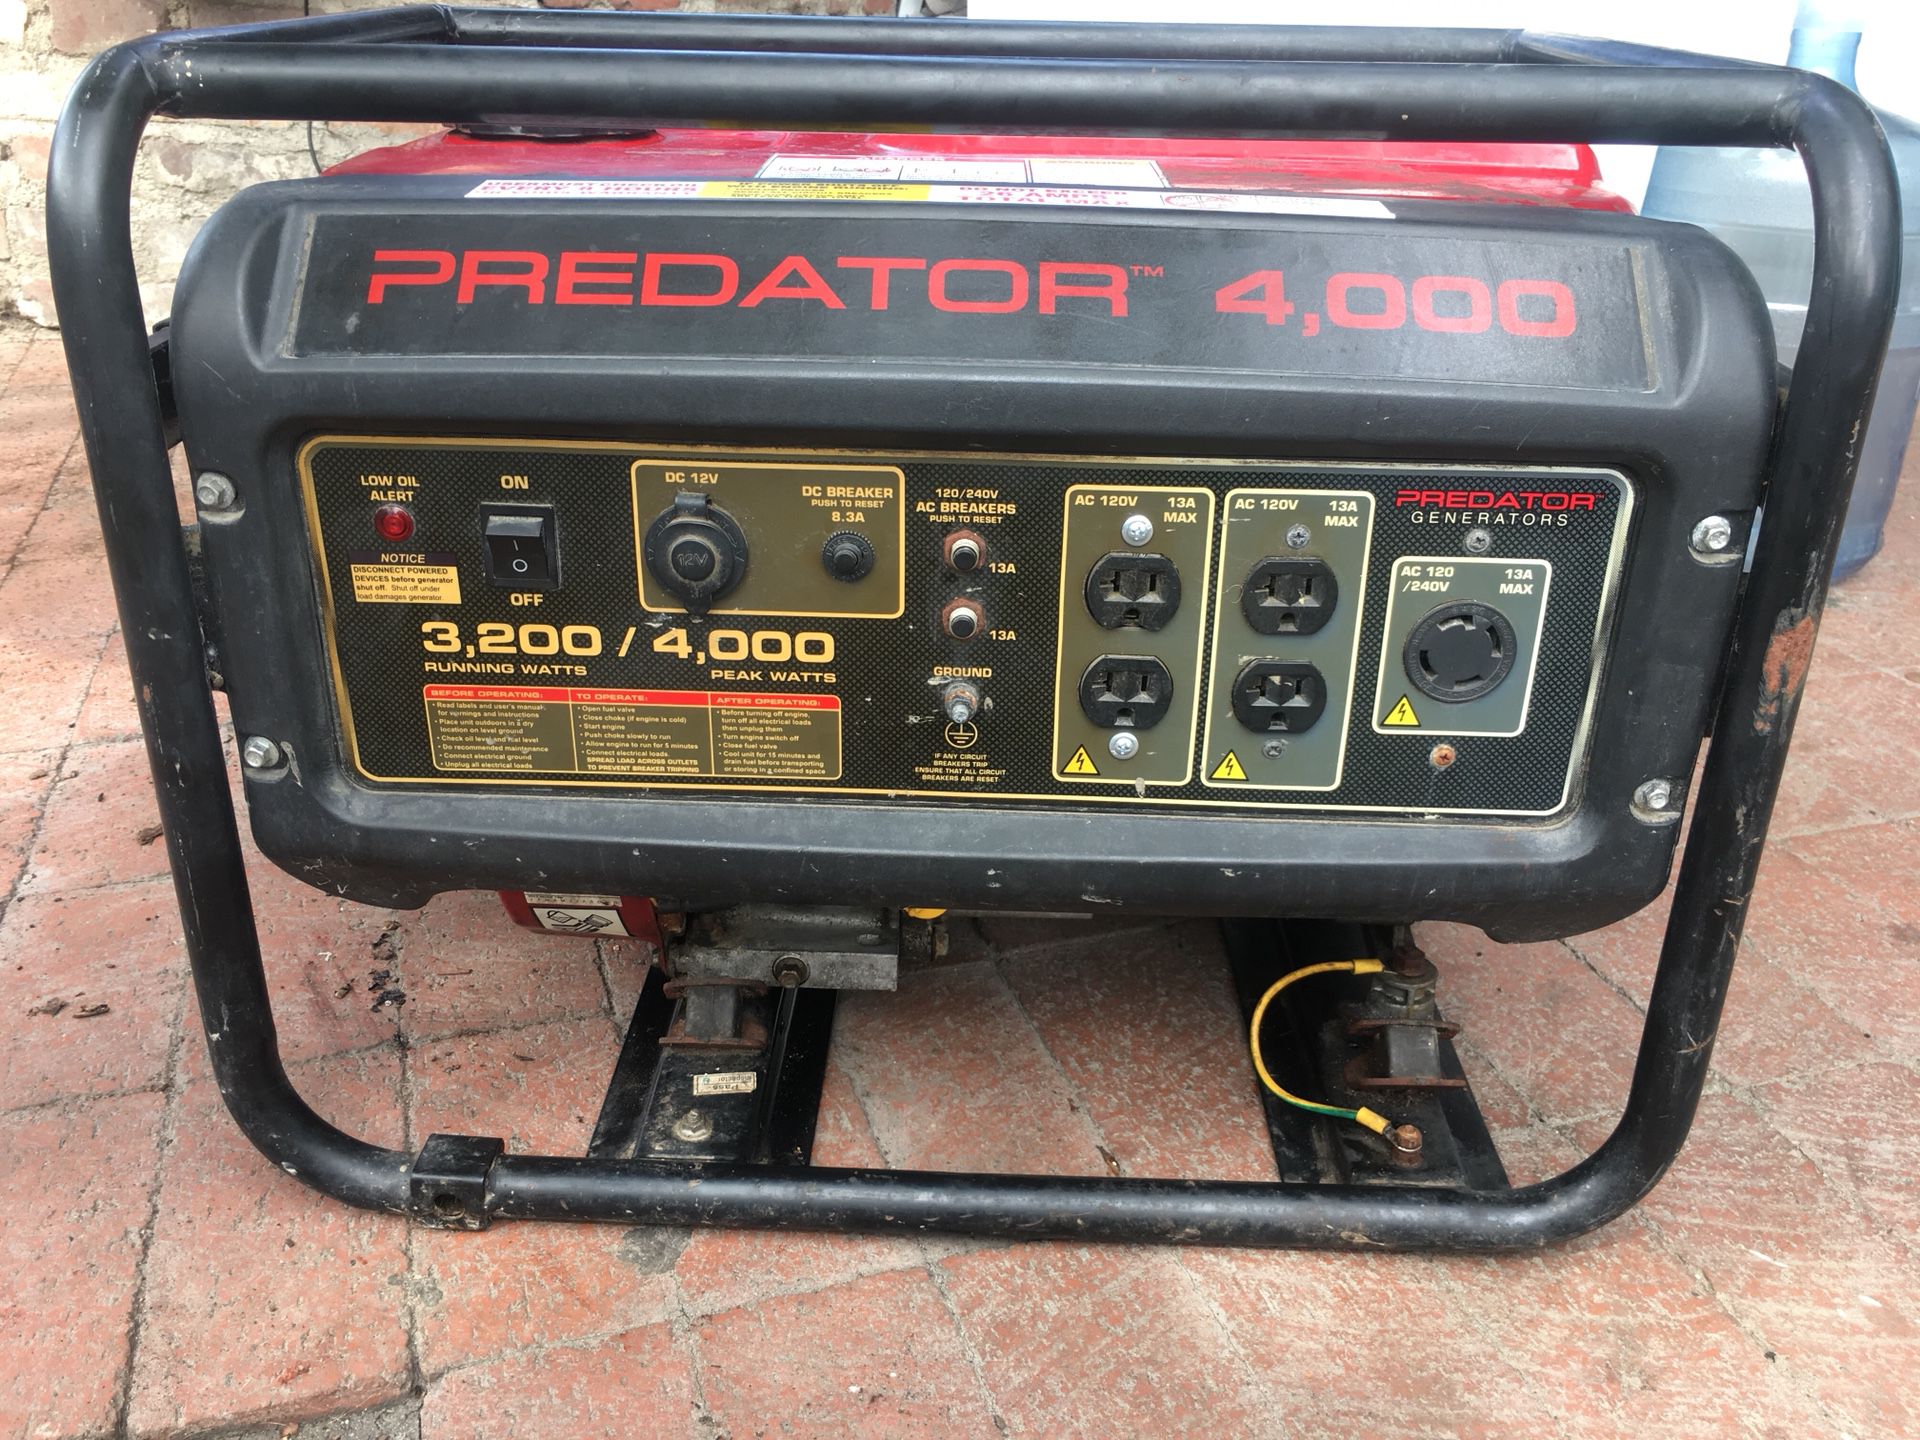 Predator Generator 4,000 peak watts